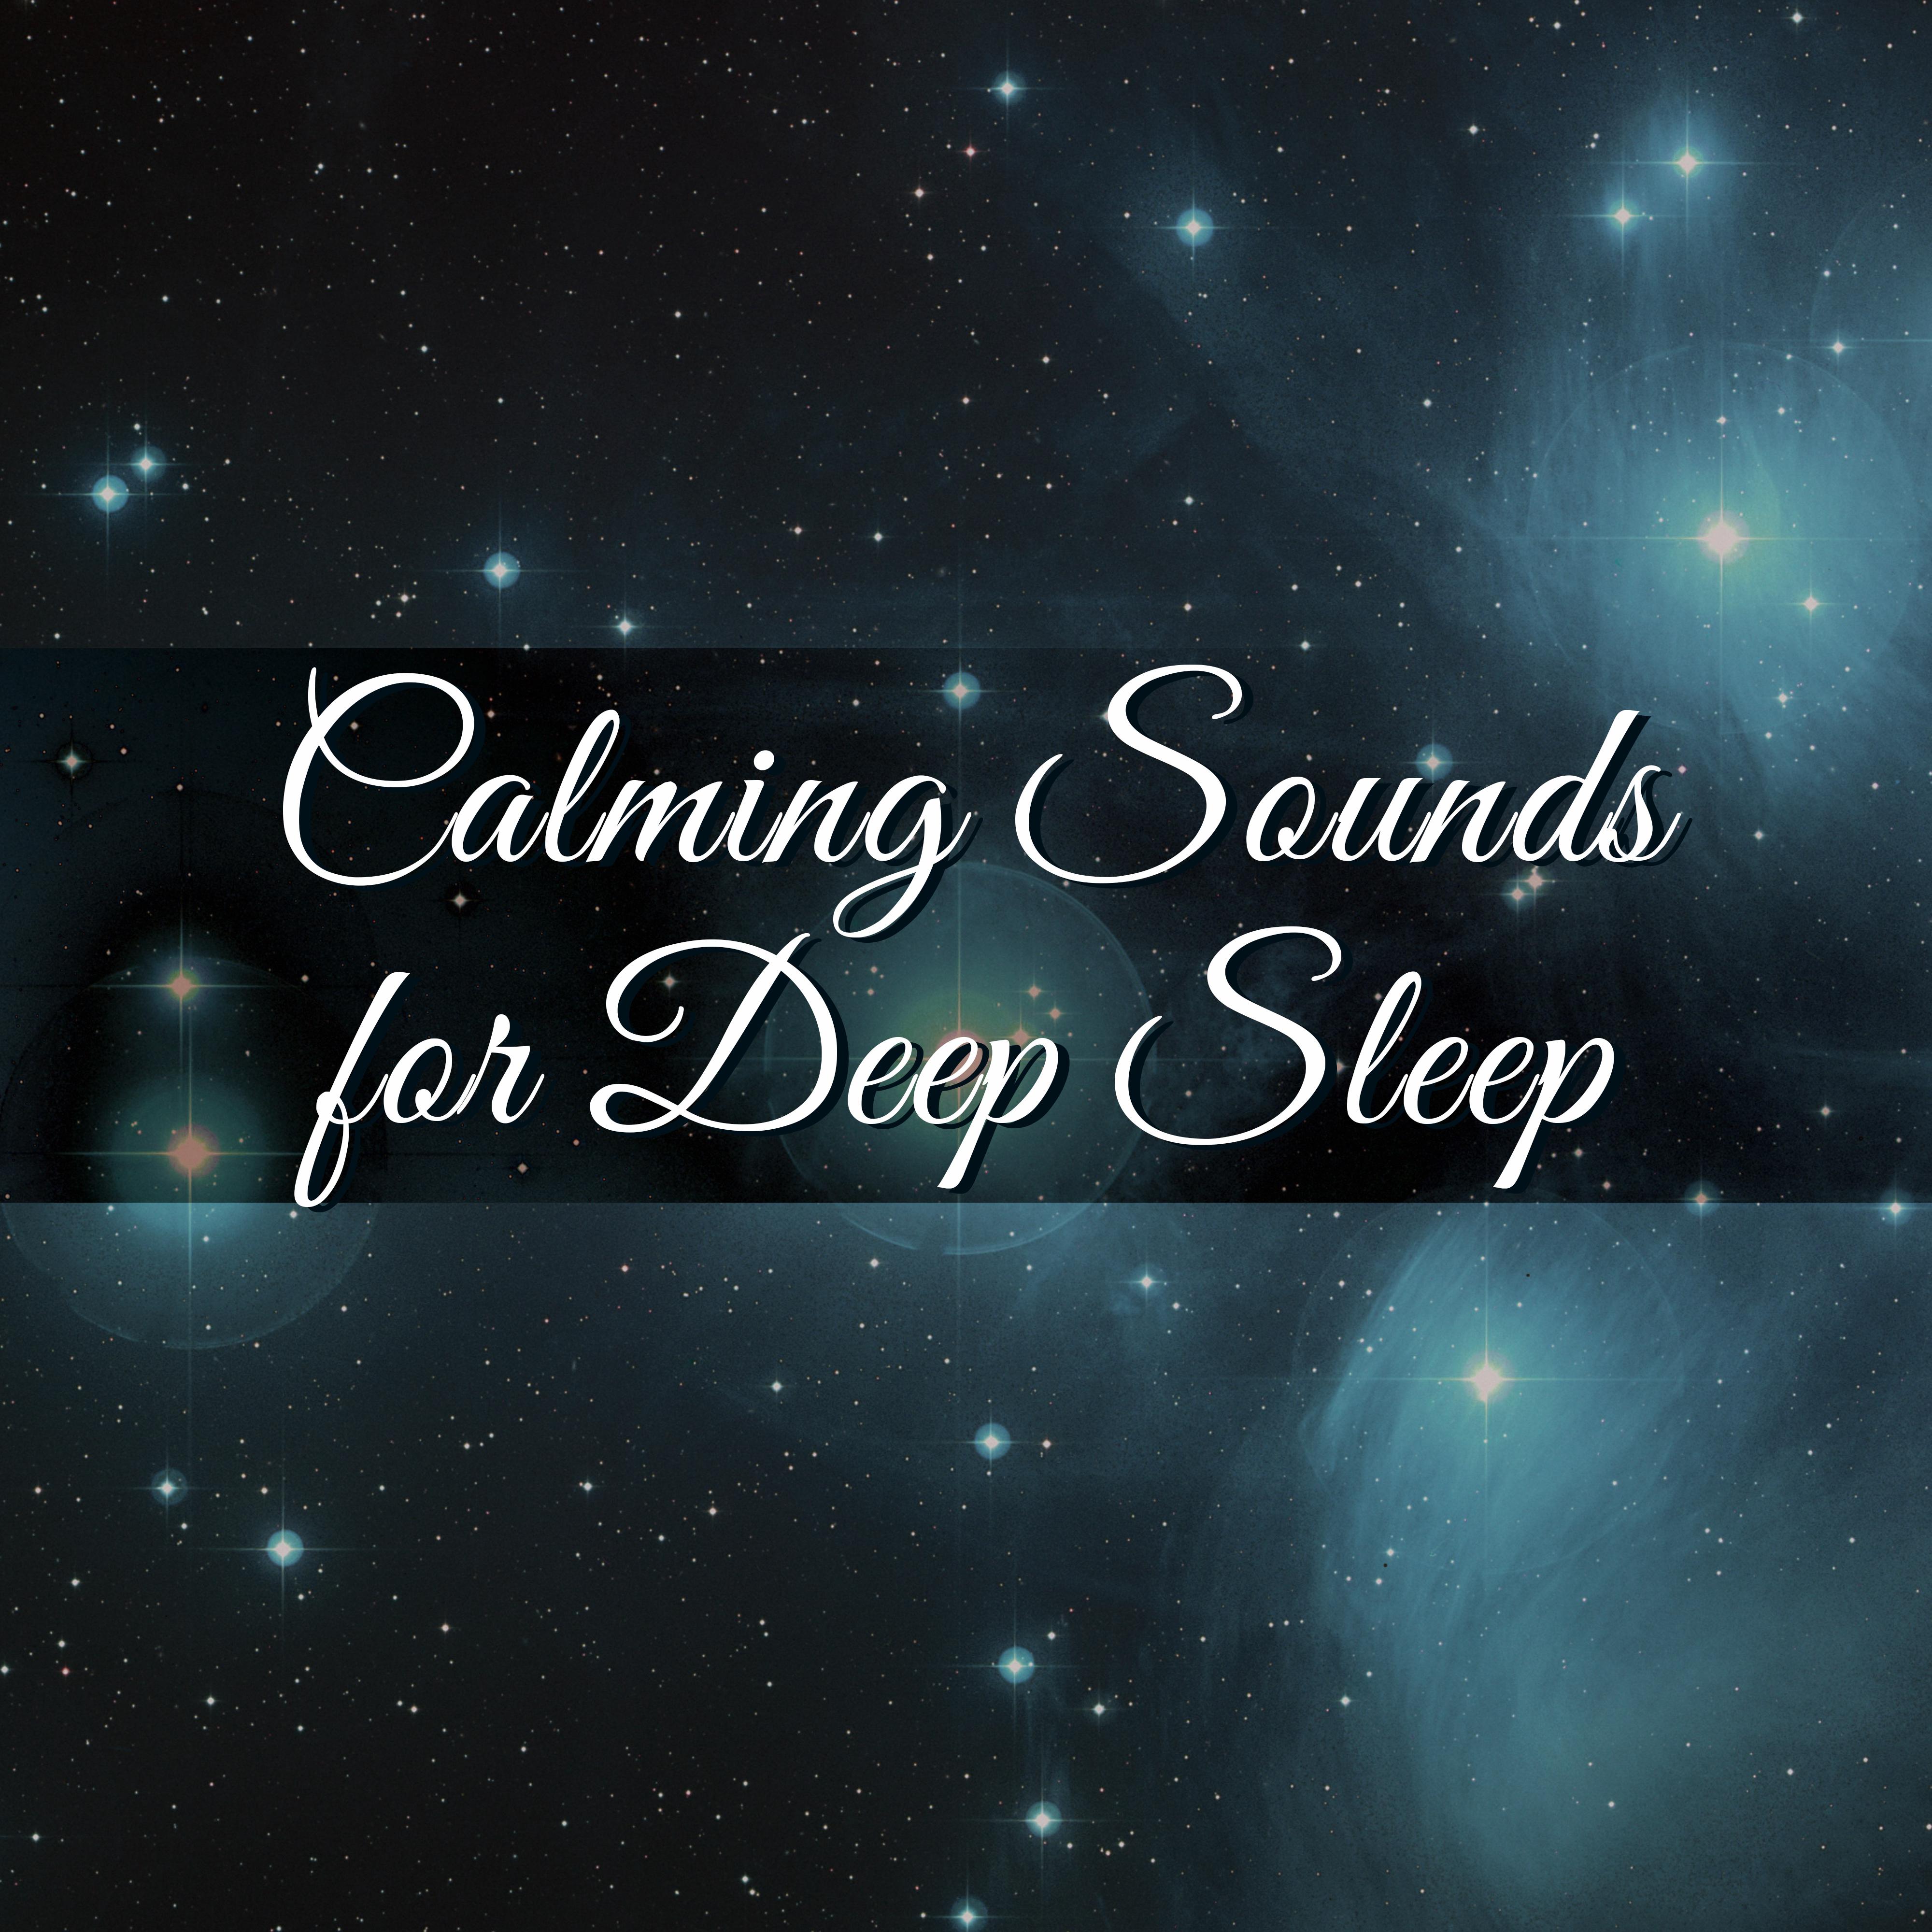 Calming Sounds for Deep Sleep  Waves of Calmness, Spirit Relaxation, Deep Sleep, Sweet Dreams, Night Rest